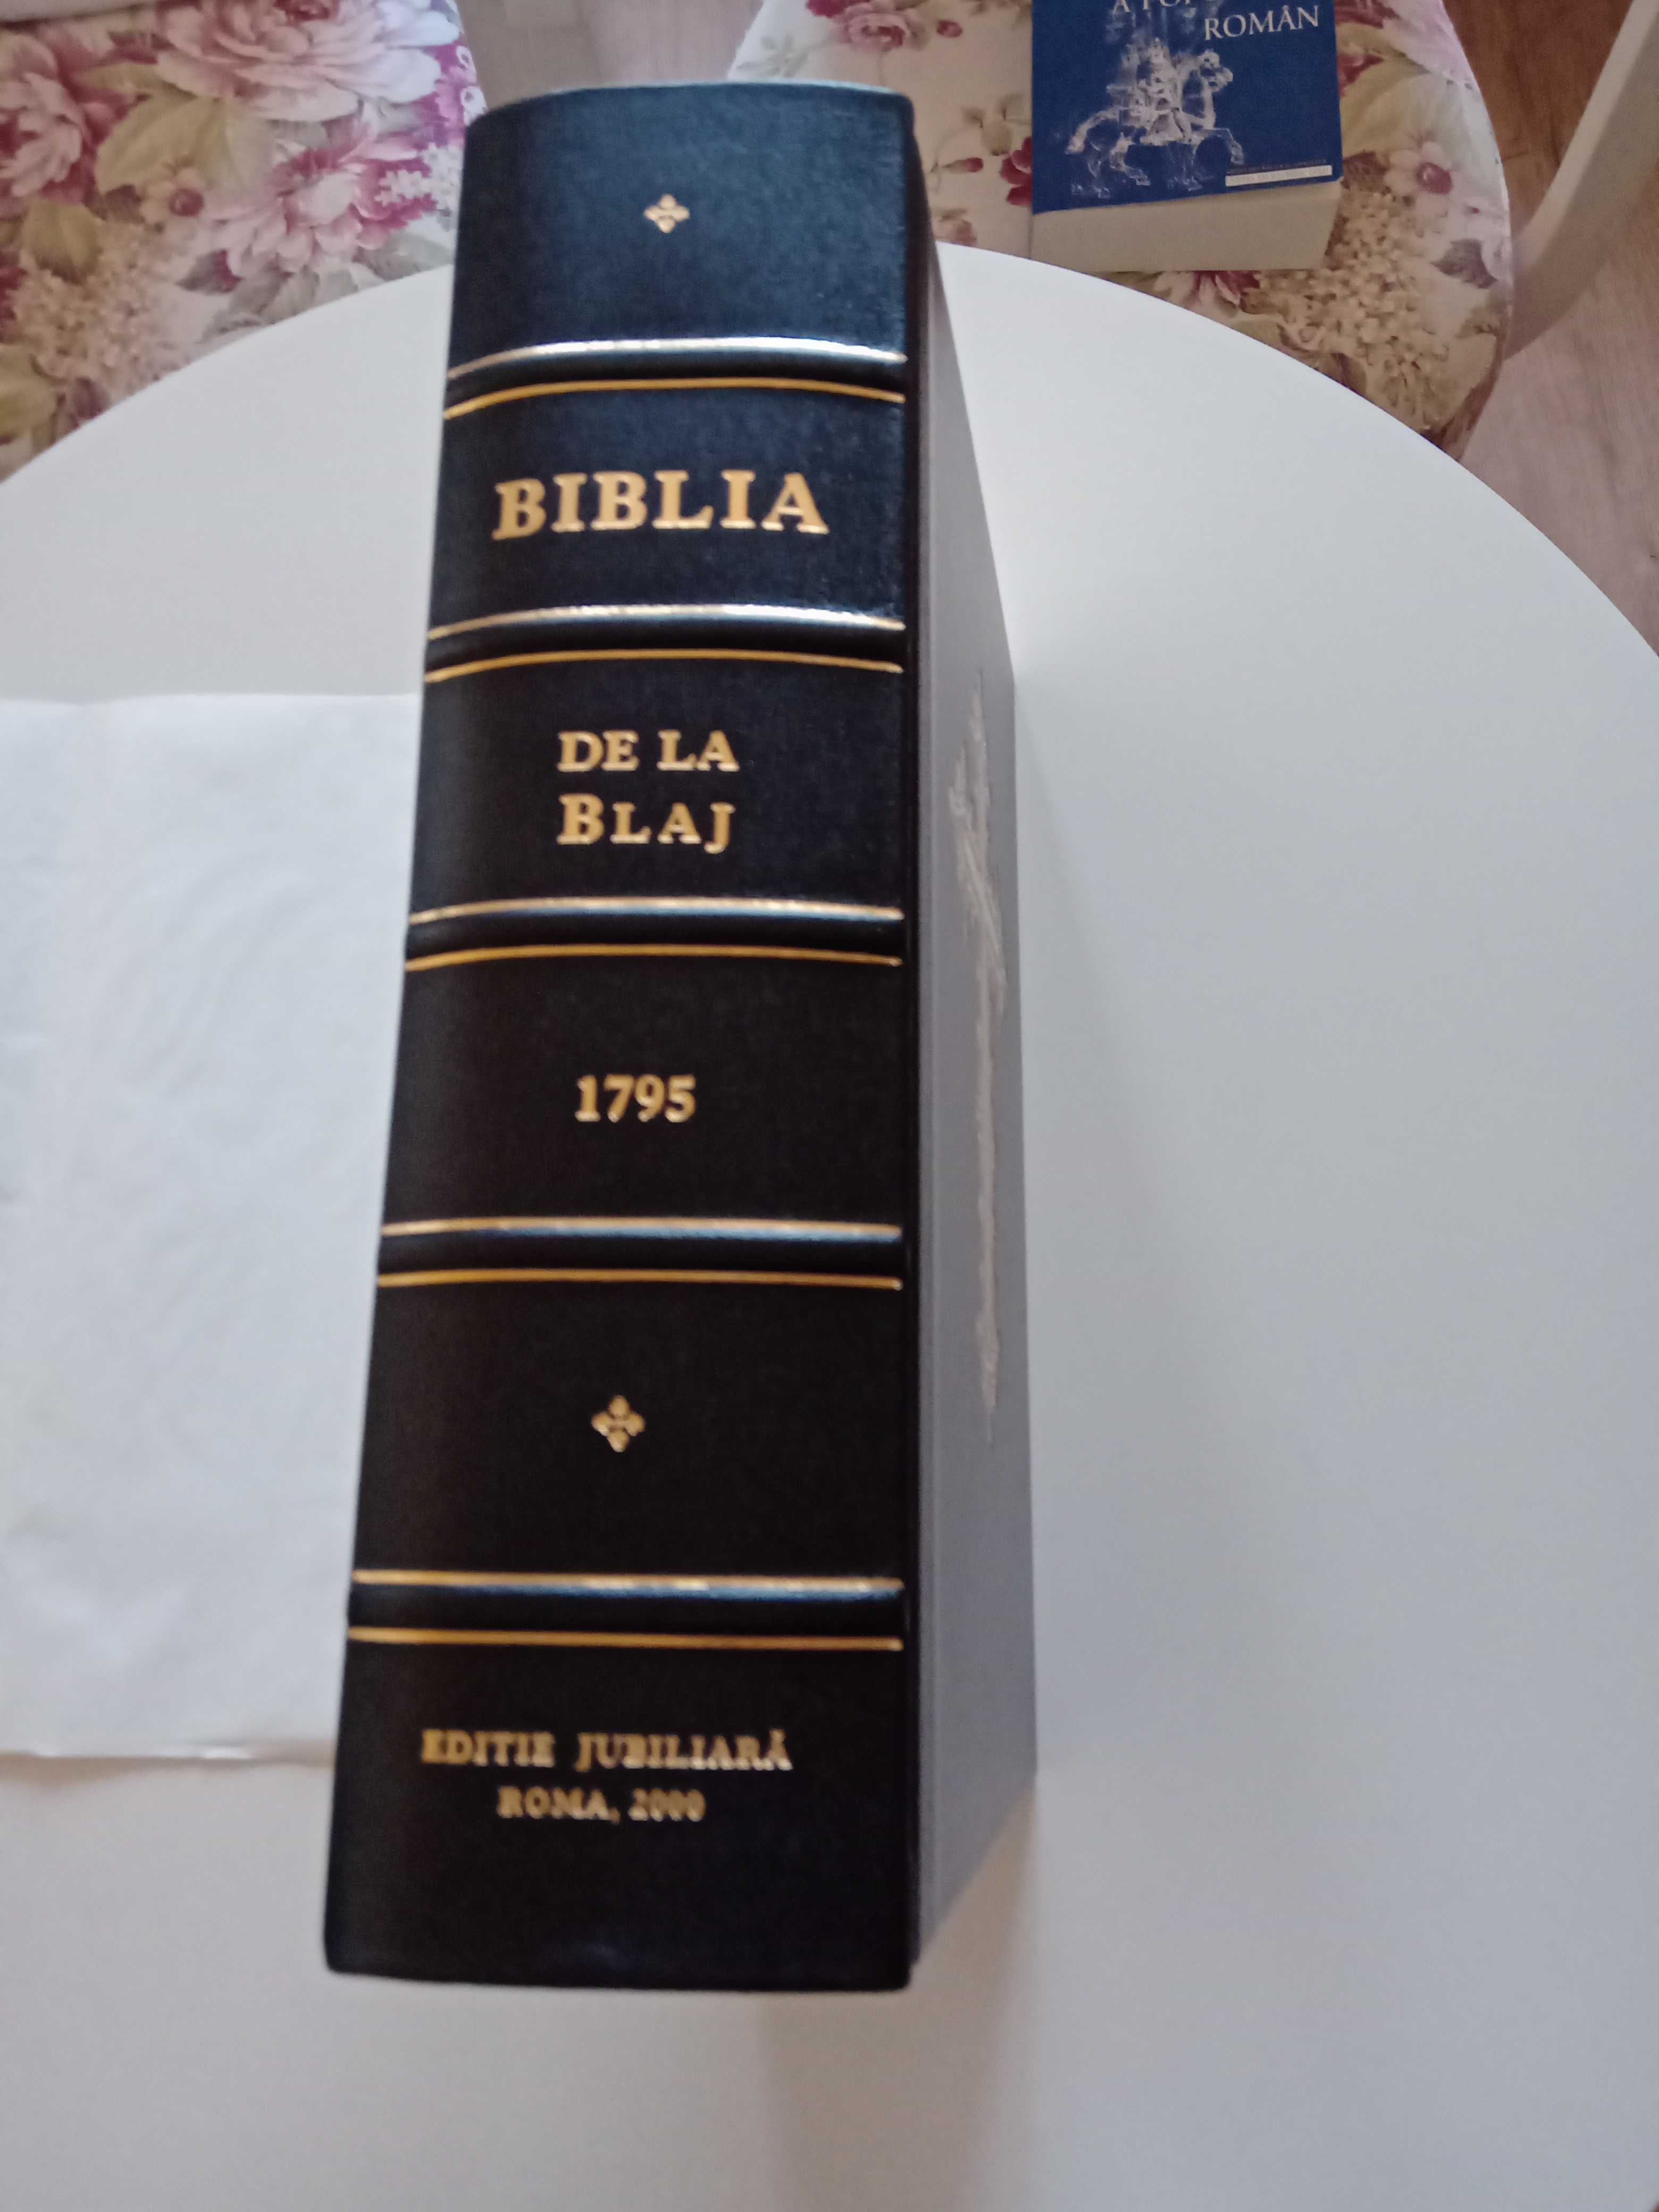 Biblia de la Blaj, 1795